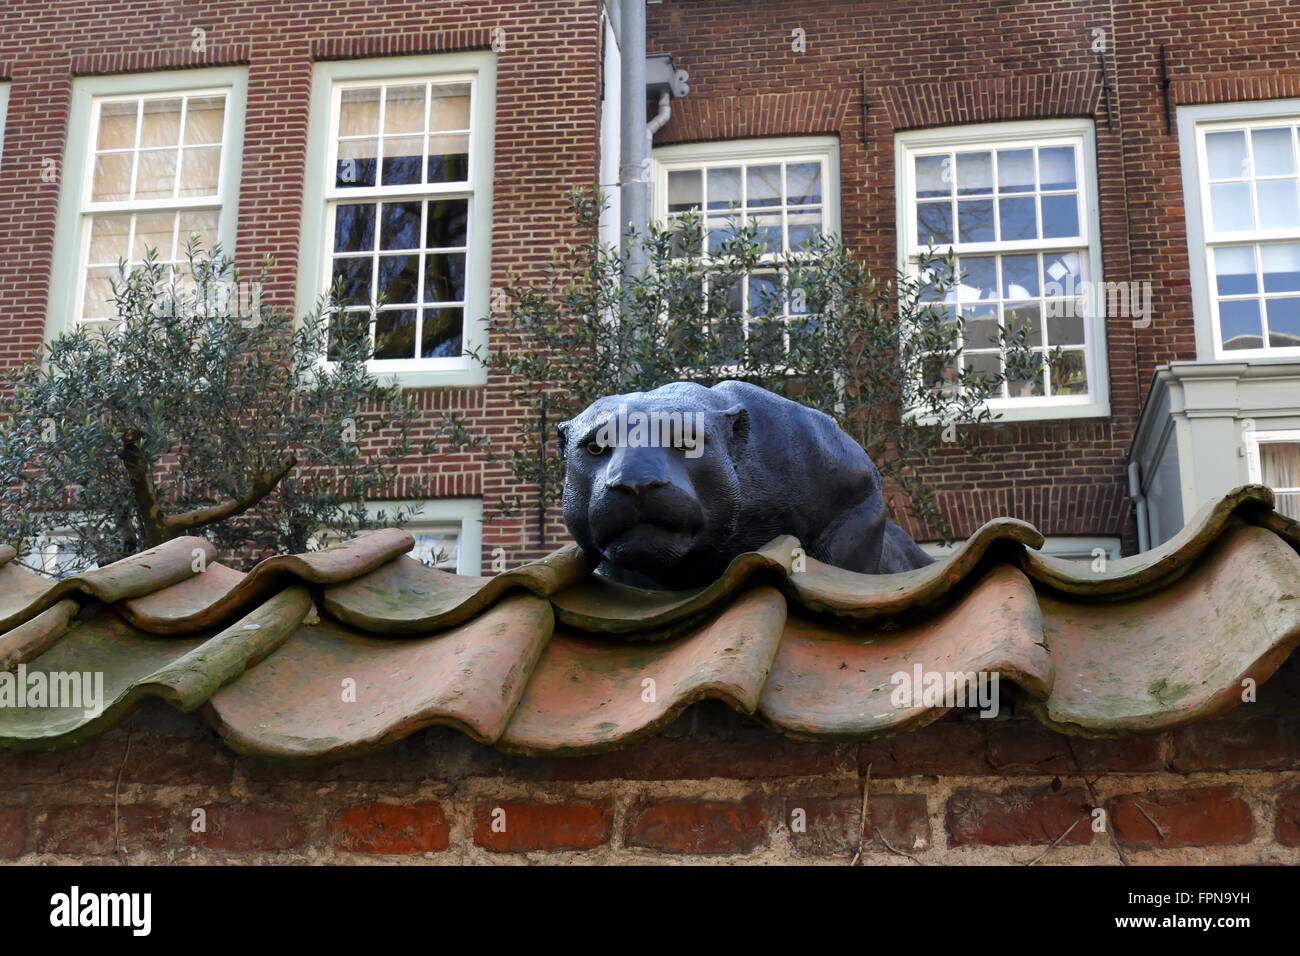 UTRECHT, Países Bajos - Febrero 27, 2016: Flora's Hof en el techo de la escultura de black panter Foto de stock